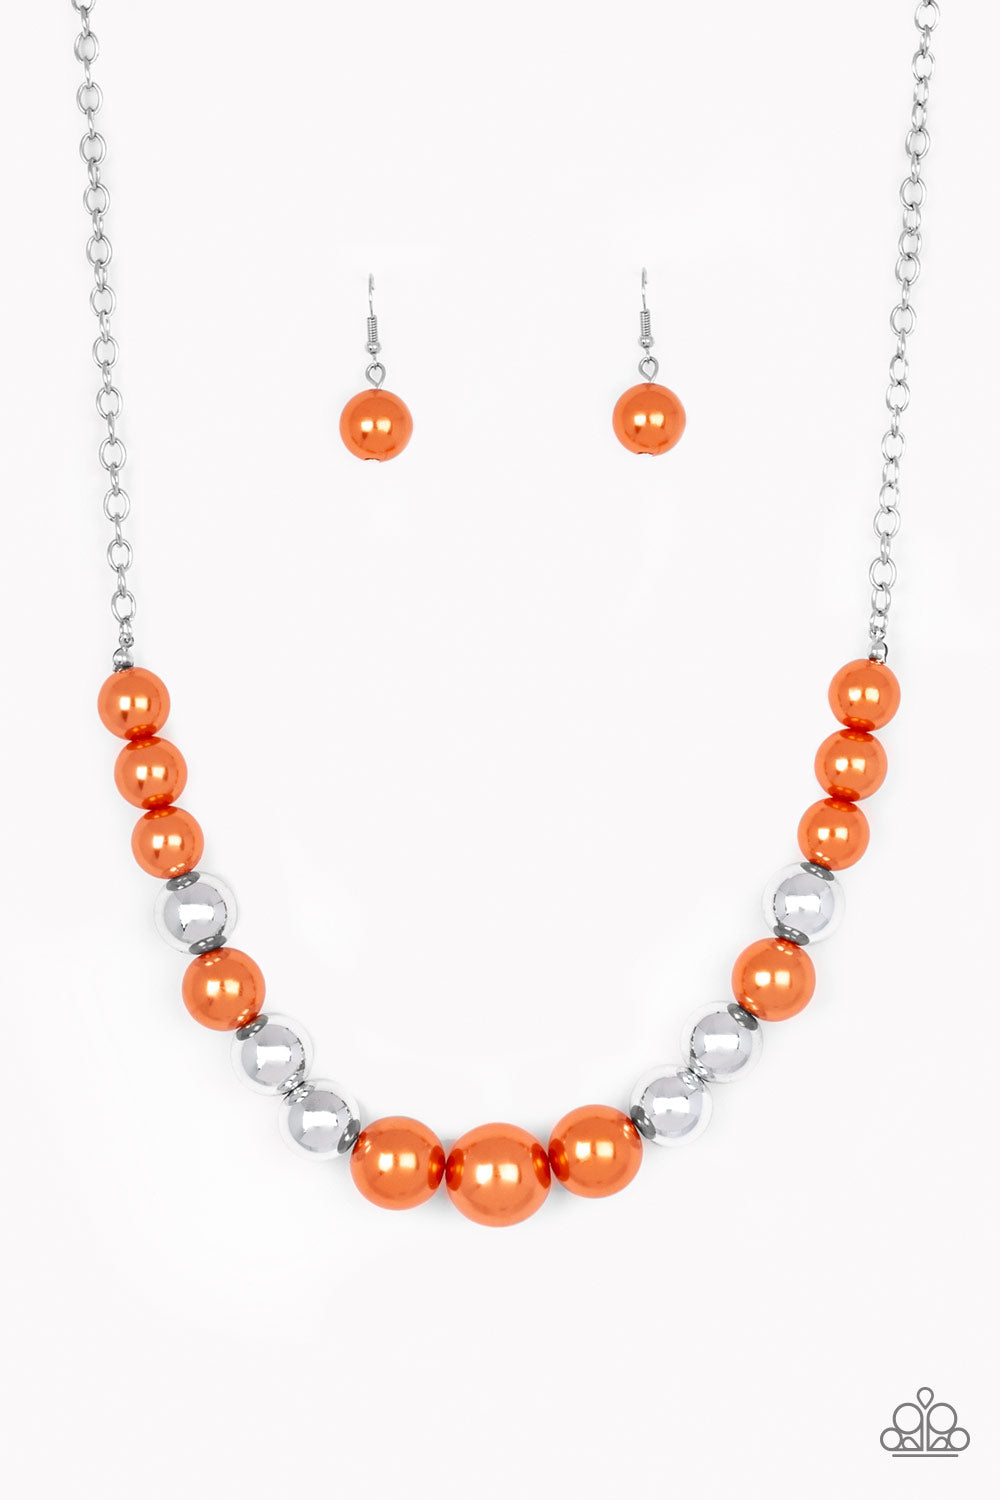 Take Note - Orange Necklace - Paparazzi Accessories - Paparazzi Accessories 